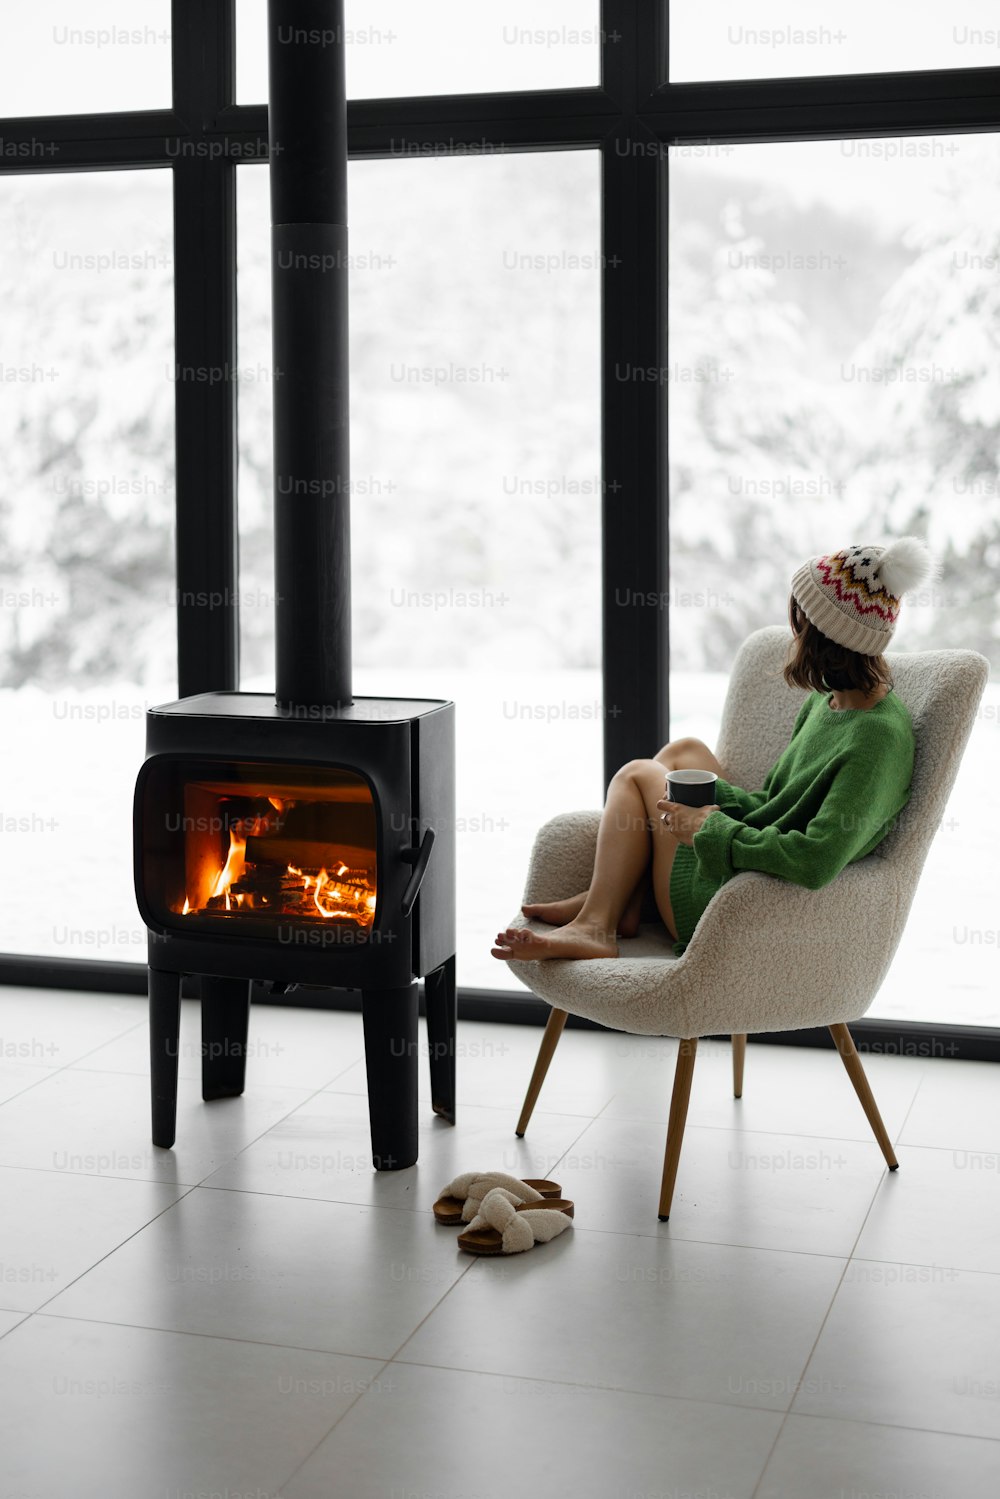 Donna seduta con tazza sulla sedia vicino al camino in una casa moderna sulla natura durante l'inverno. Concetto di mood invernale e comfort in casa. Ragazza che indossa cappello e maglione verde